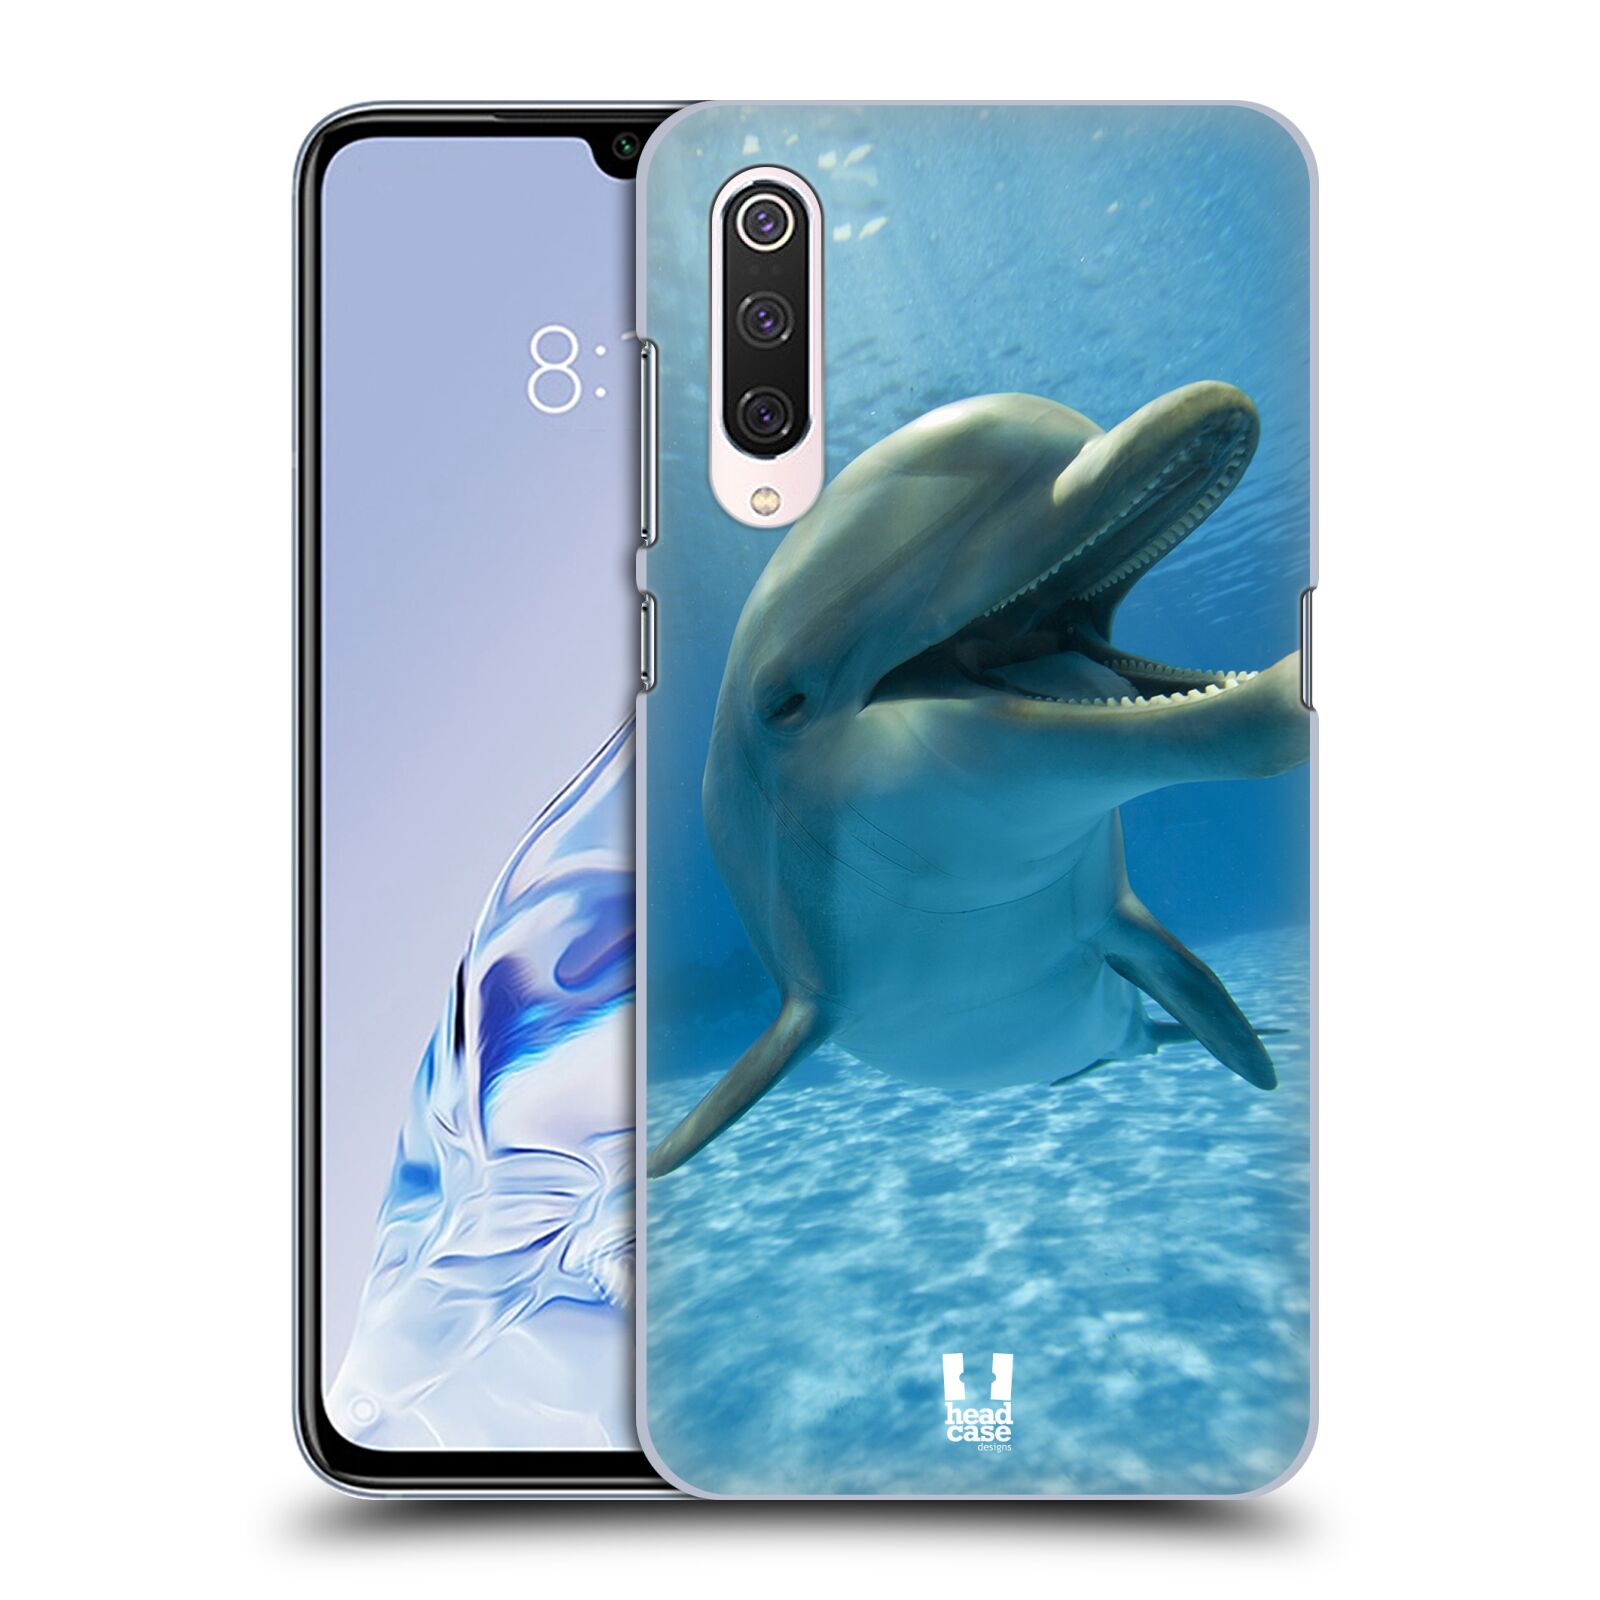 Zadní obal pro mobil Xiaomi Mi 9 PRO - HEAD CASE - Svět zvířat delfín v moři